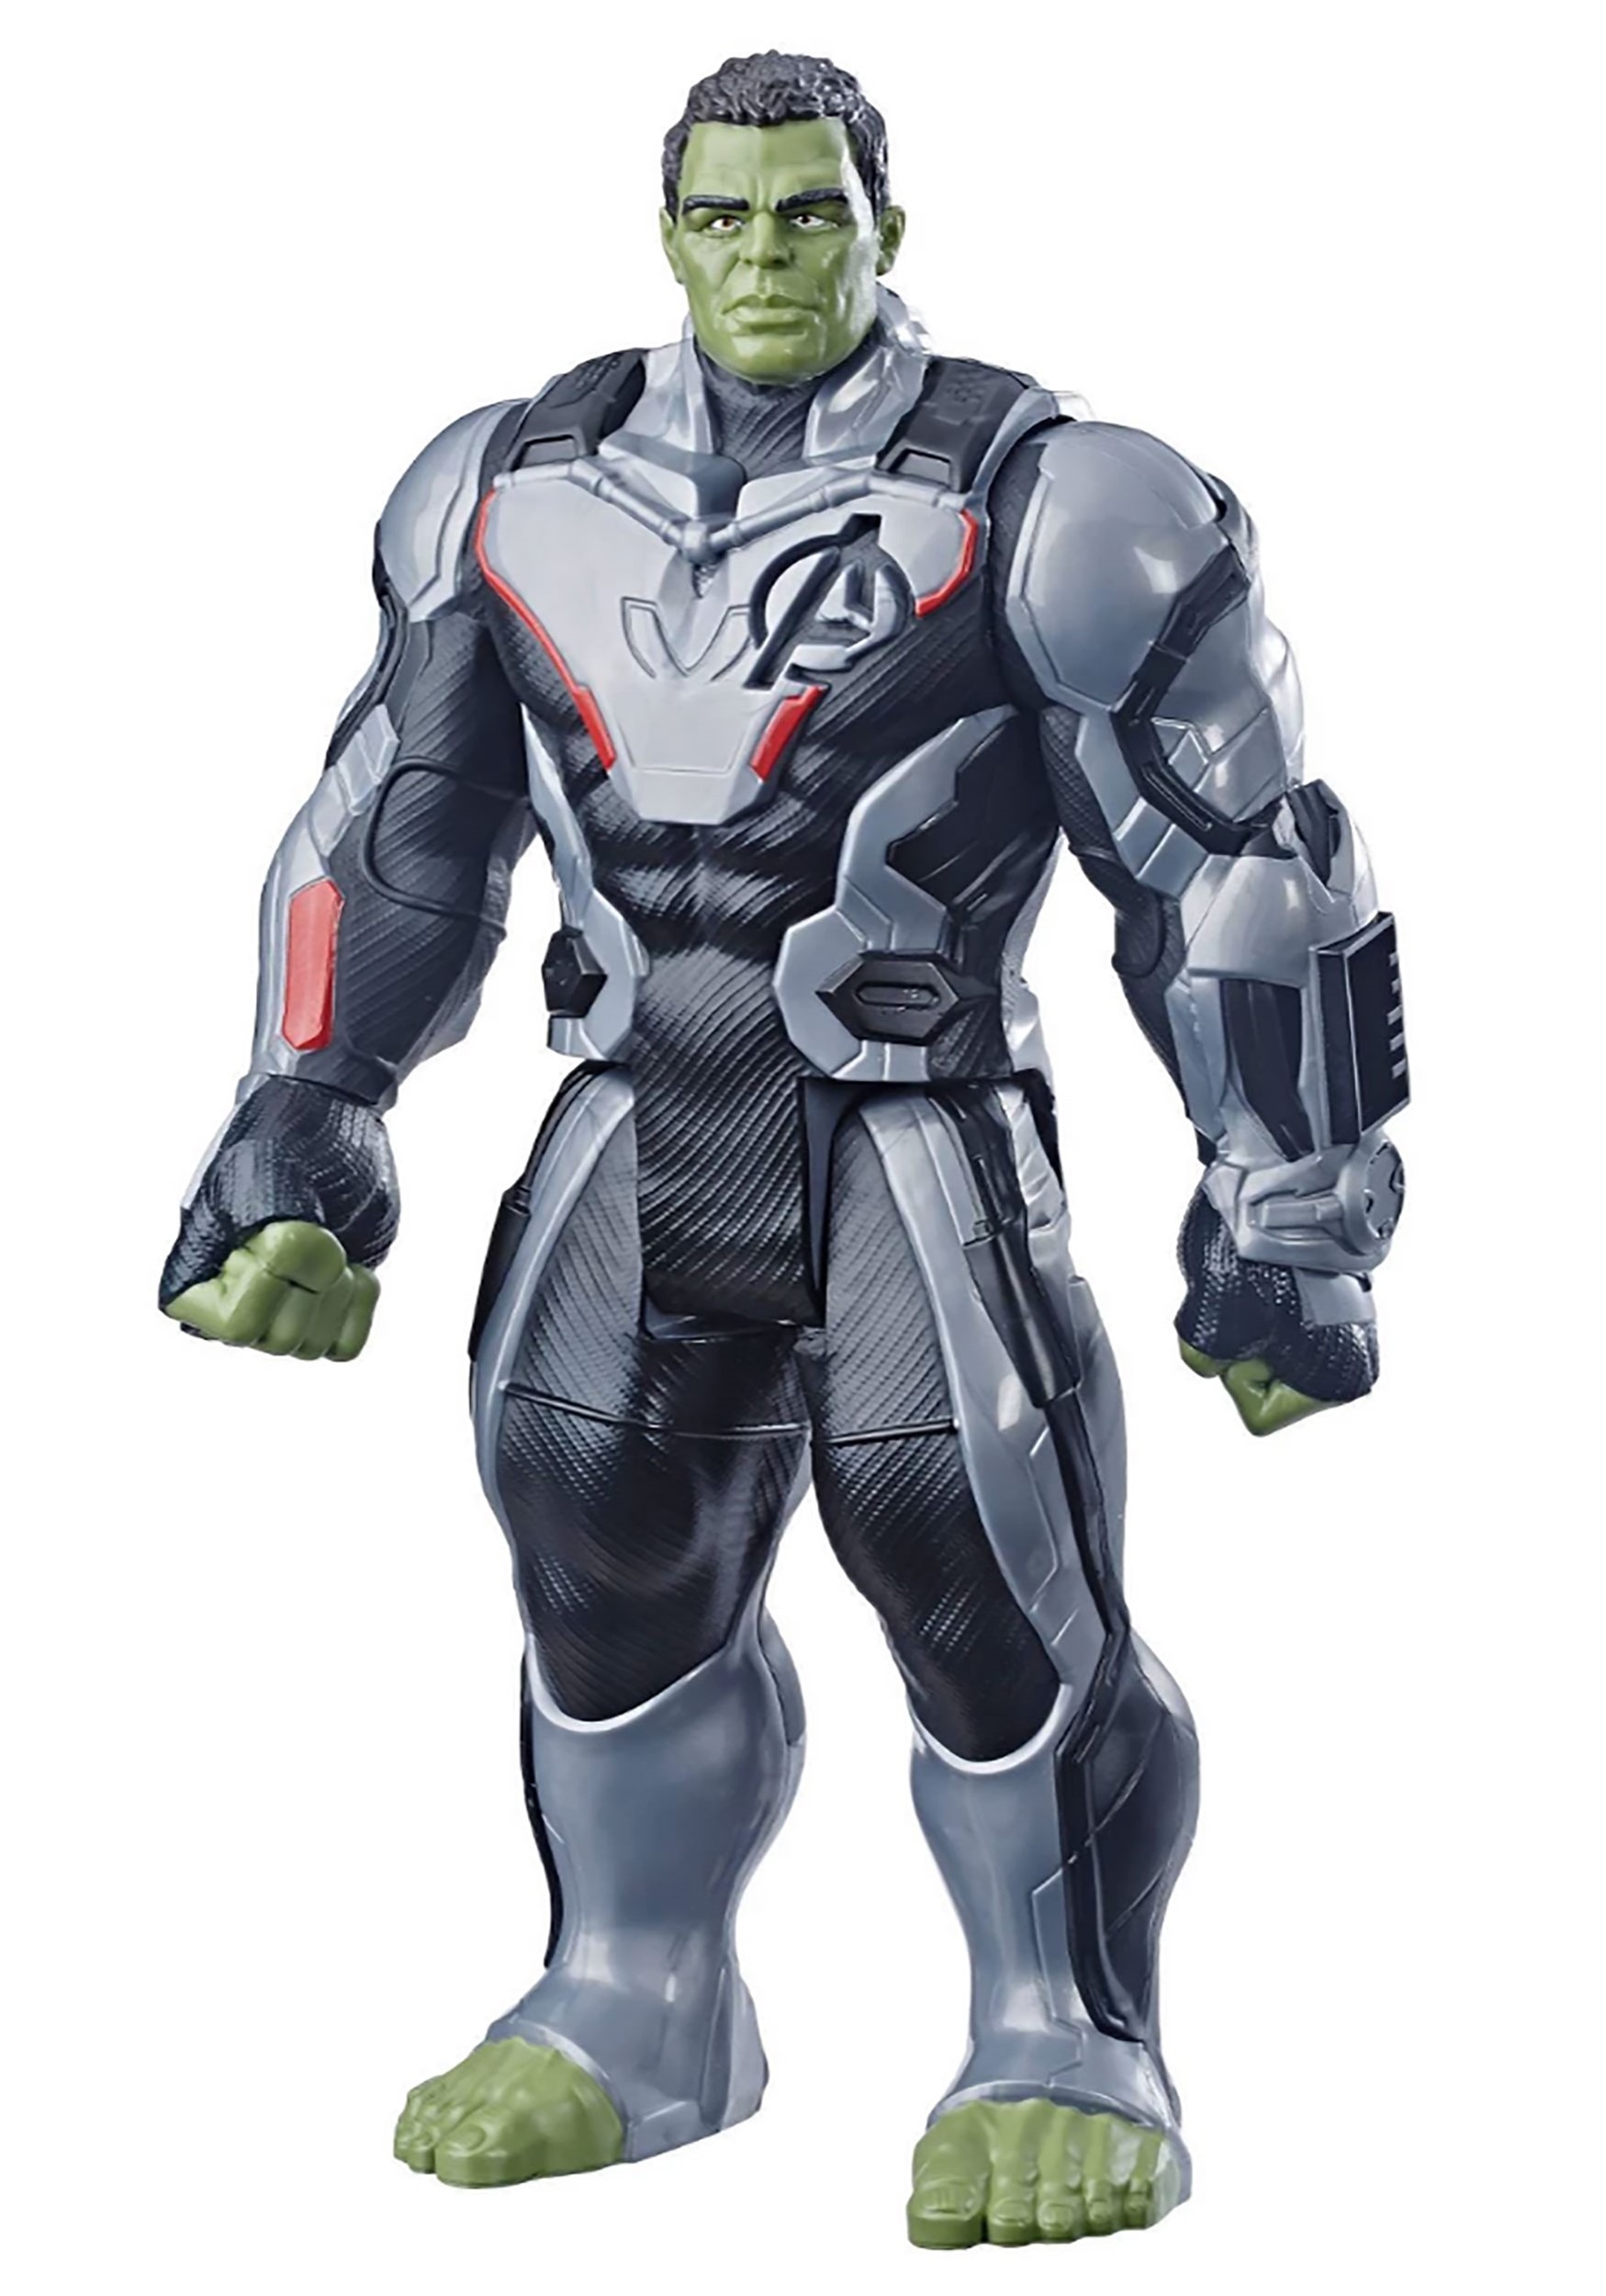 Marvel Avengers: Endgame Titan Hero Hulk 12-Inch Action Figure